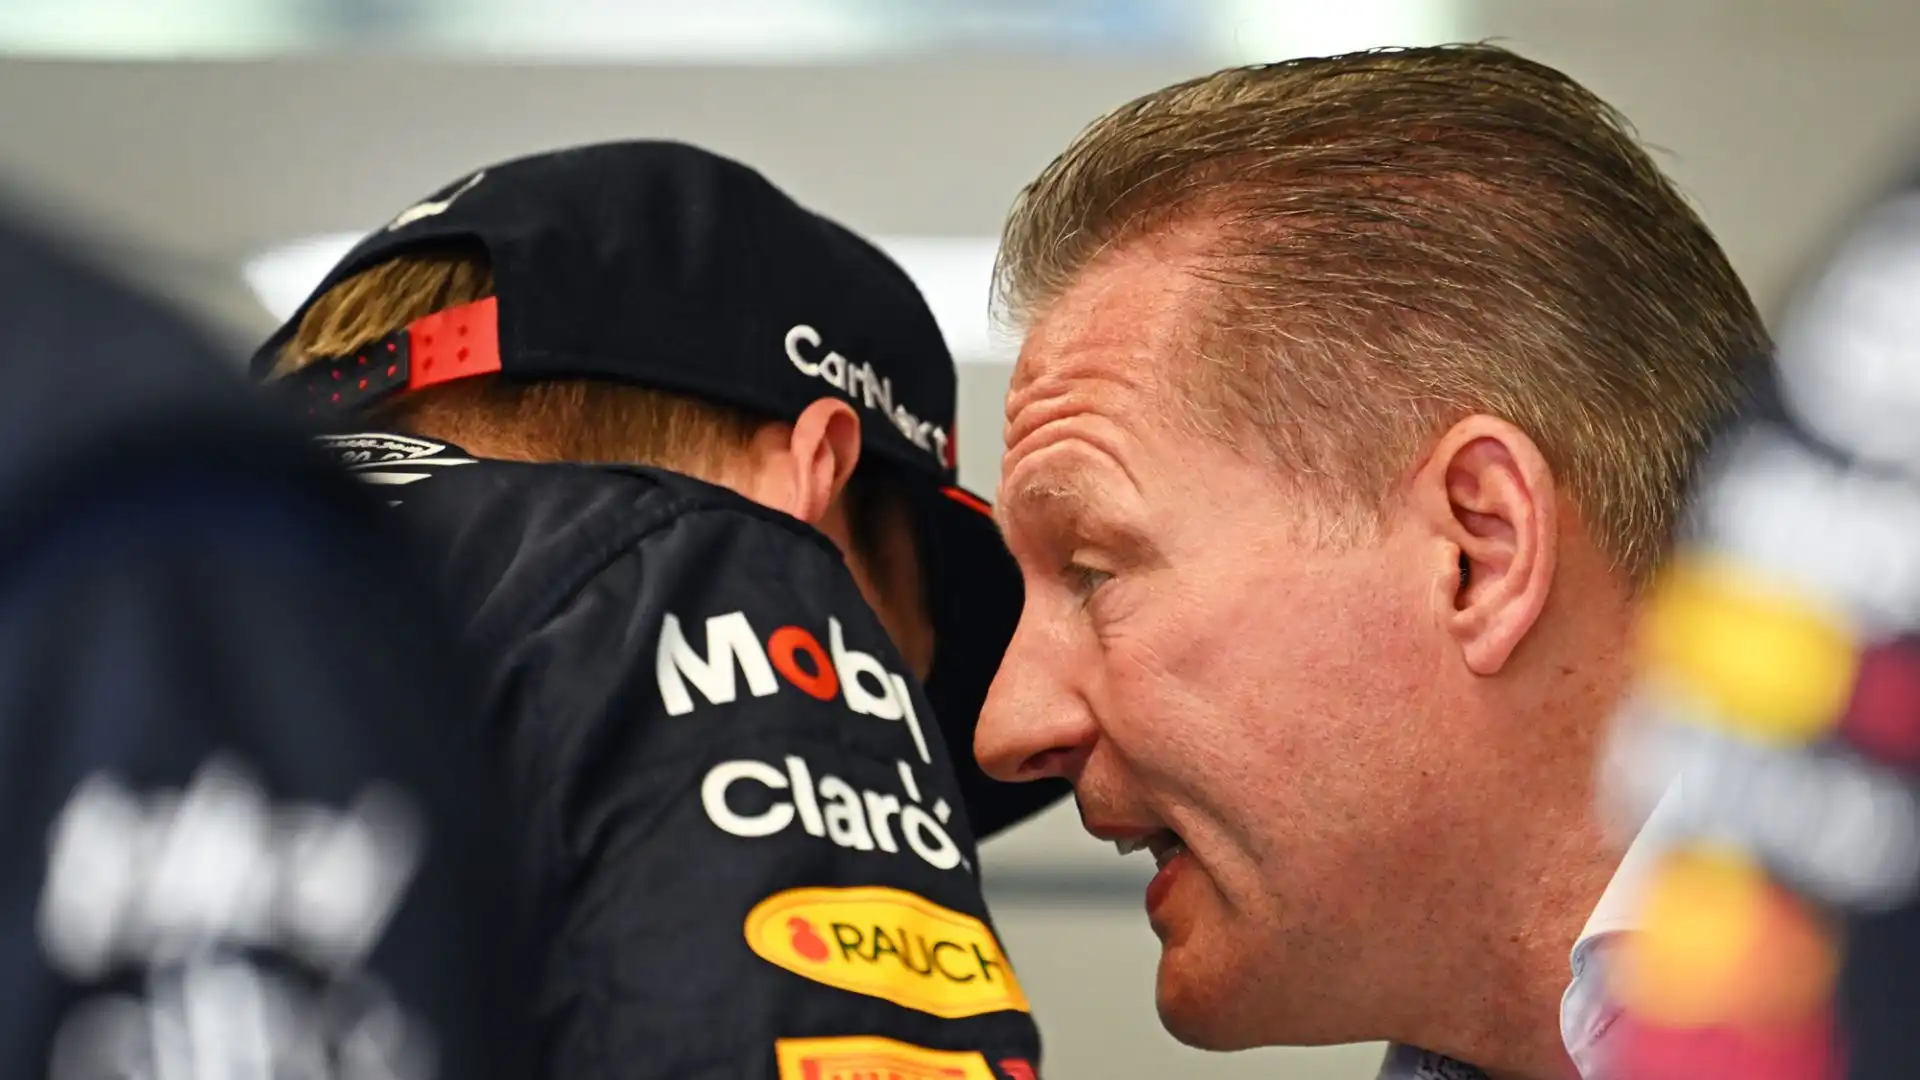 Verstappen non sta affatto perdendo motivazioni: "Gli piace dominare"